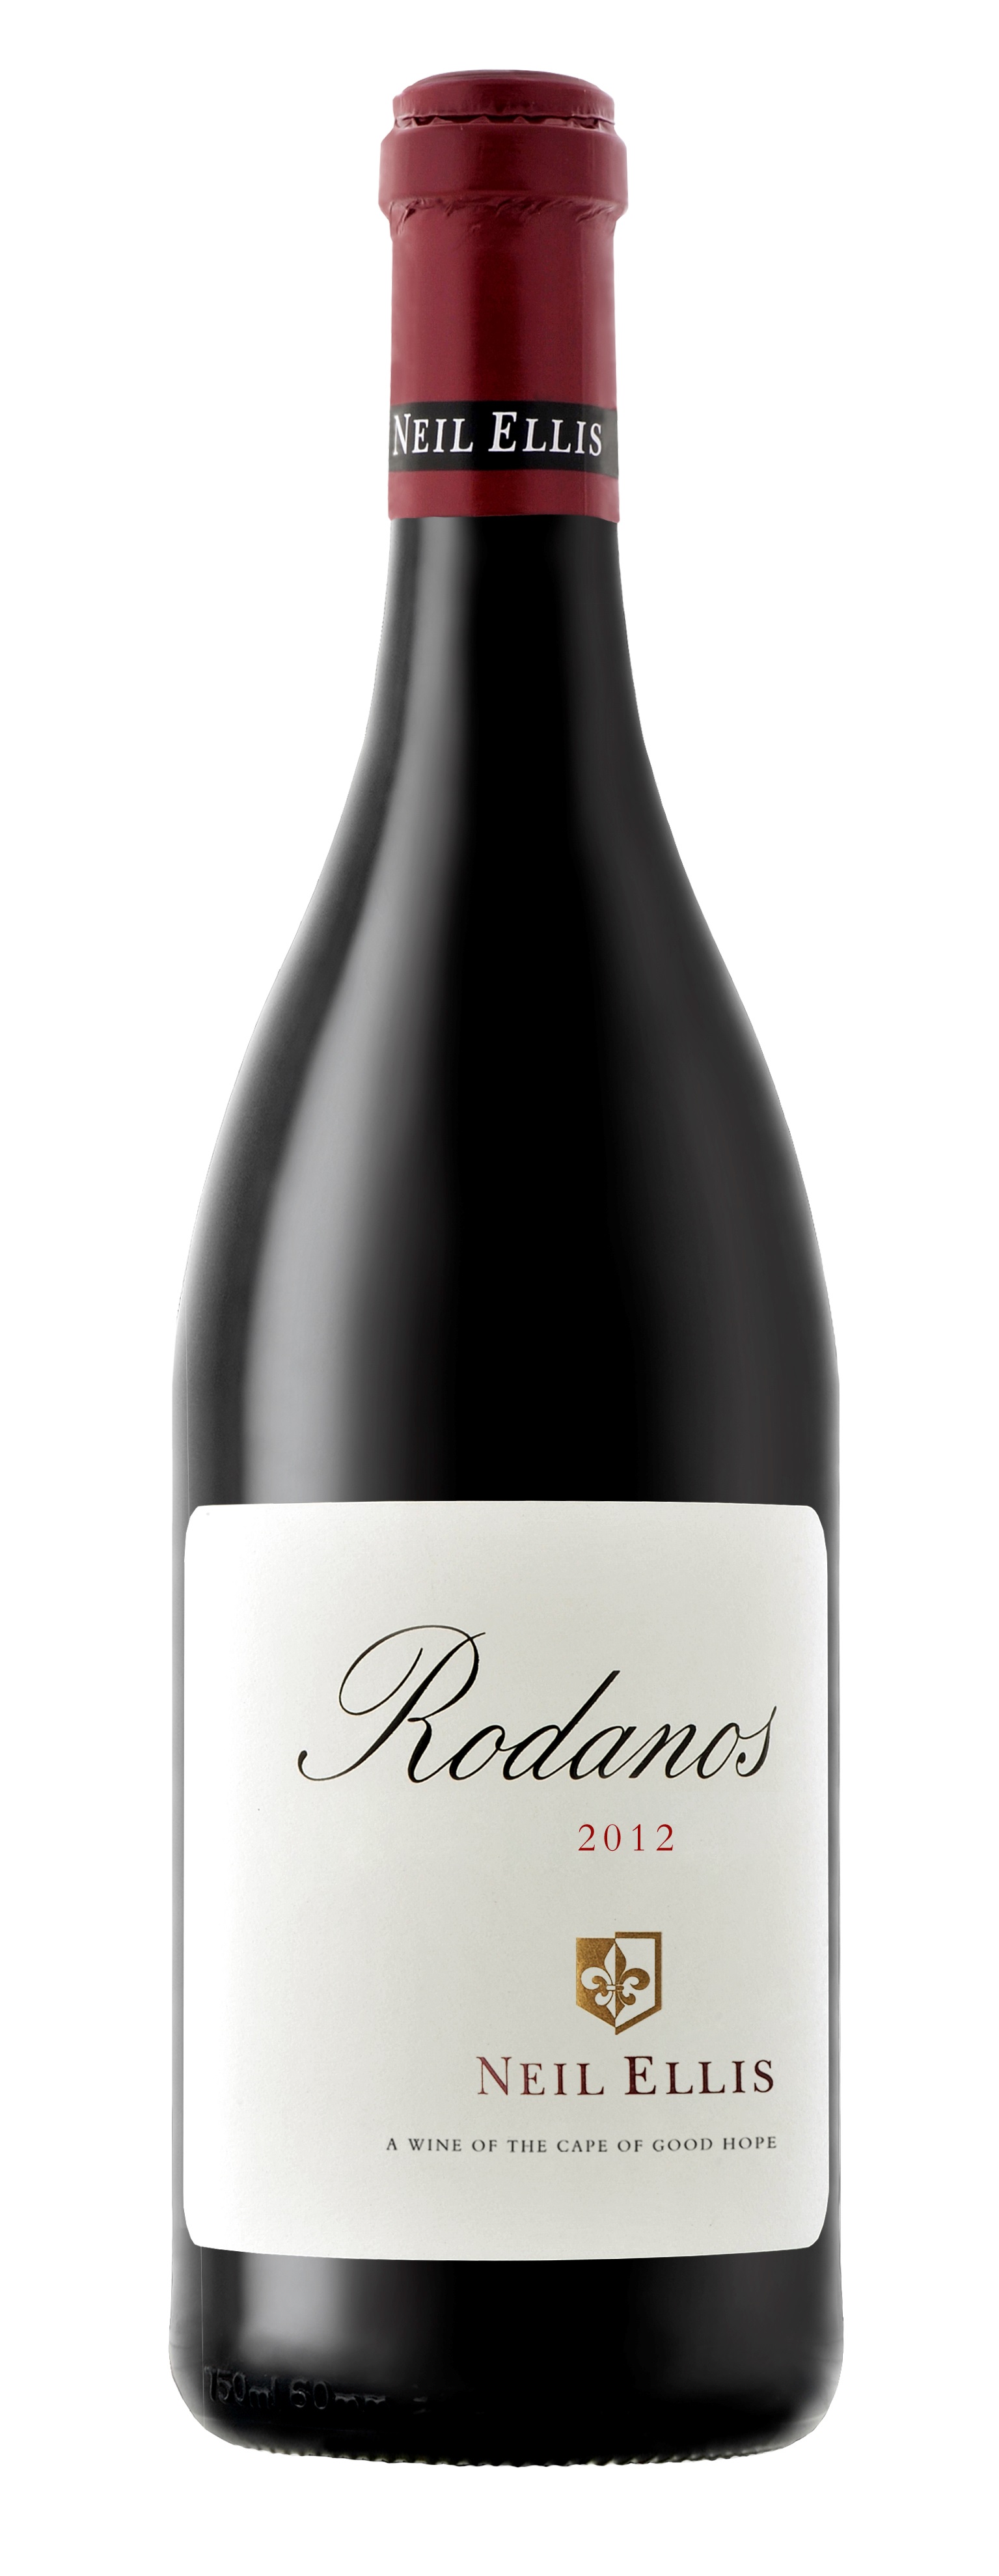  Rodanos cuvée 2015, suché